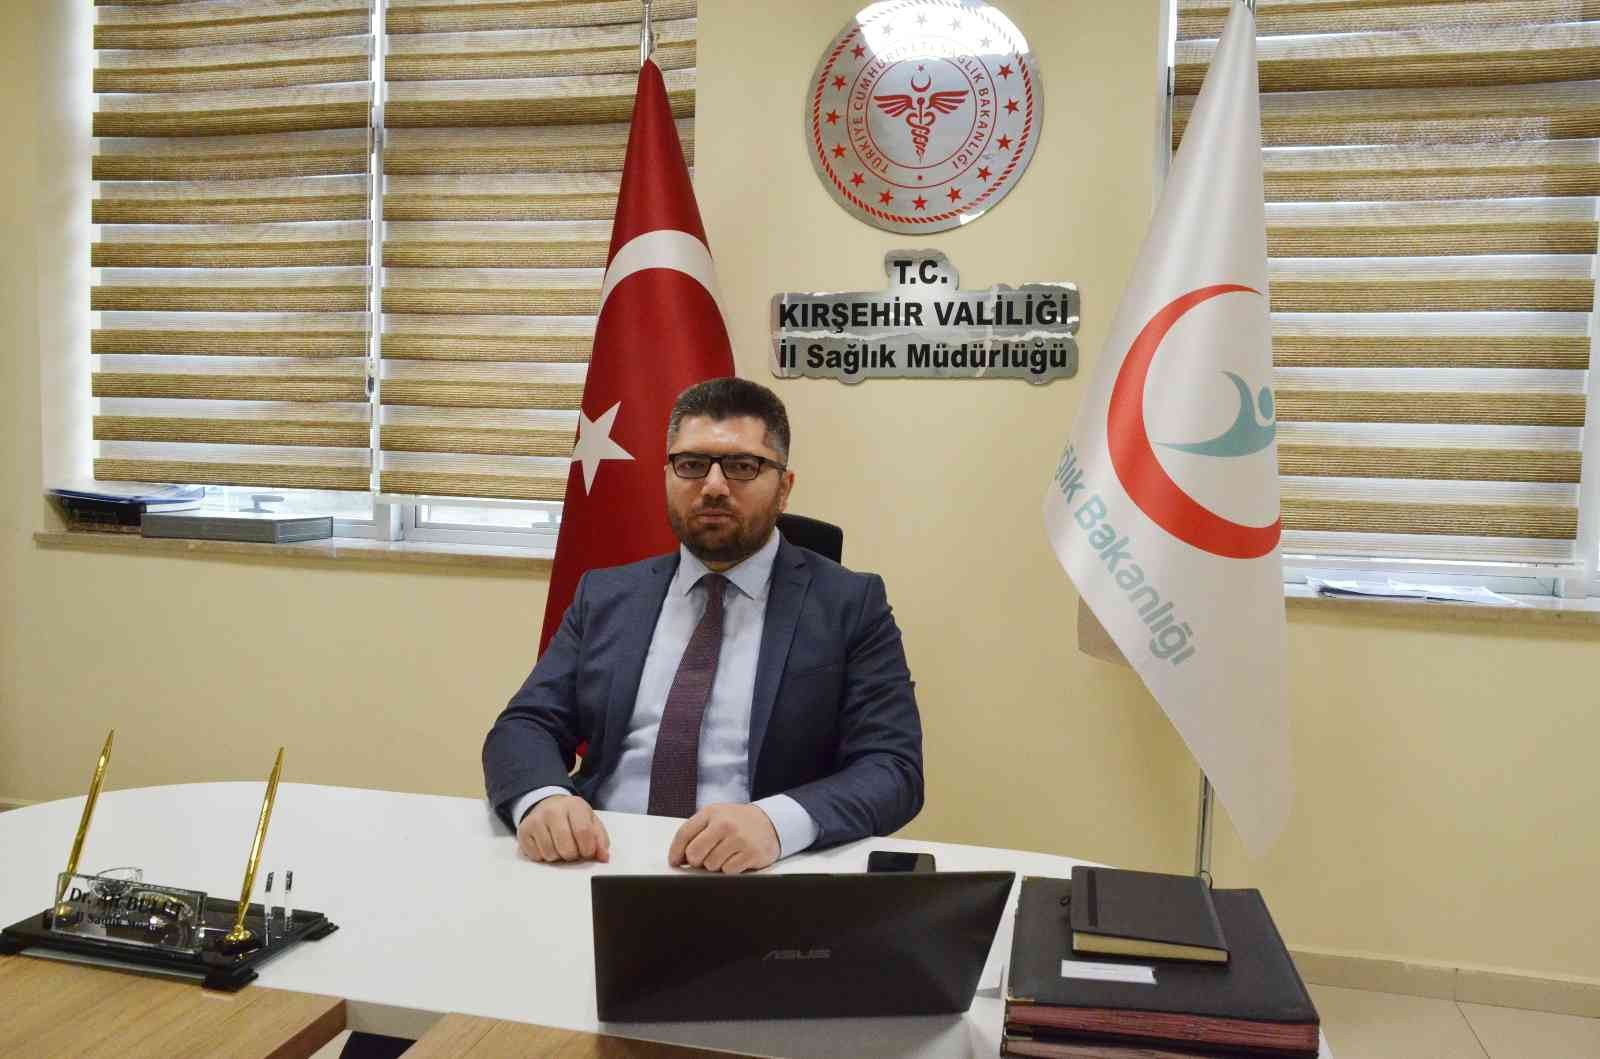 Kırşehir Sağlık İl Müdürü Bulut: Sağlık tesislerimiz tam kapasite çalışıyor #kirsehir